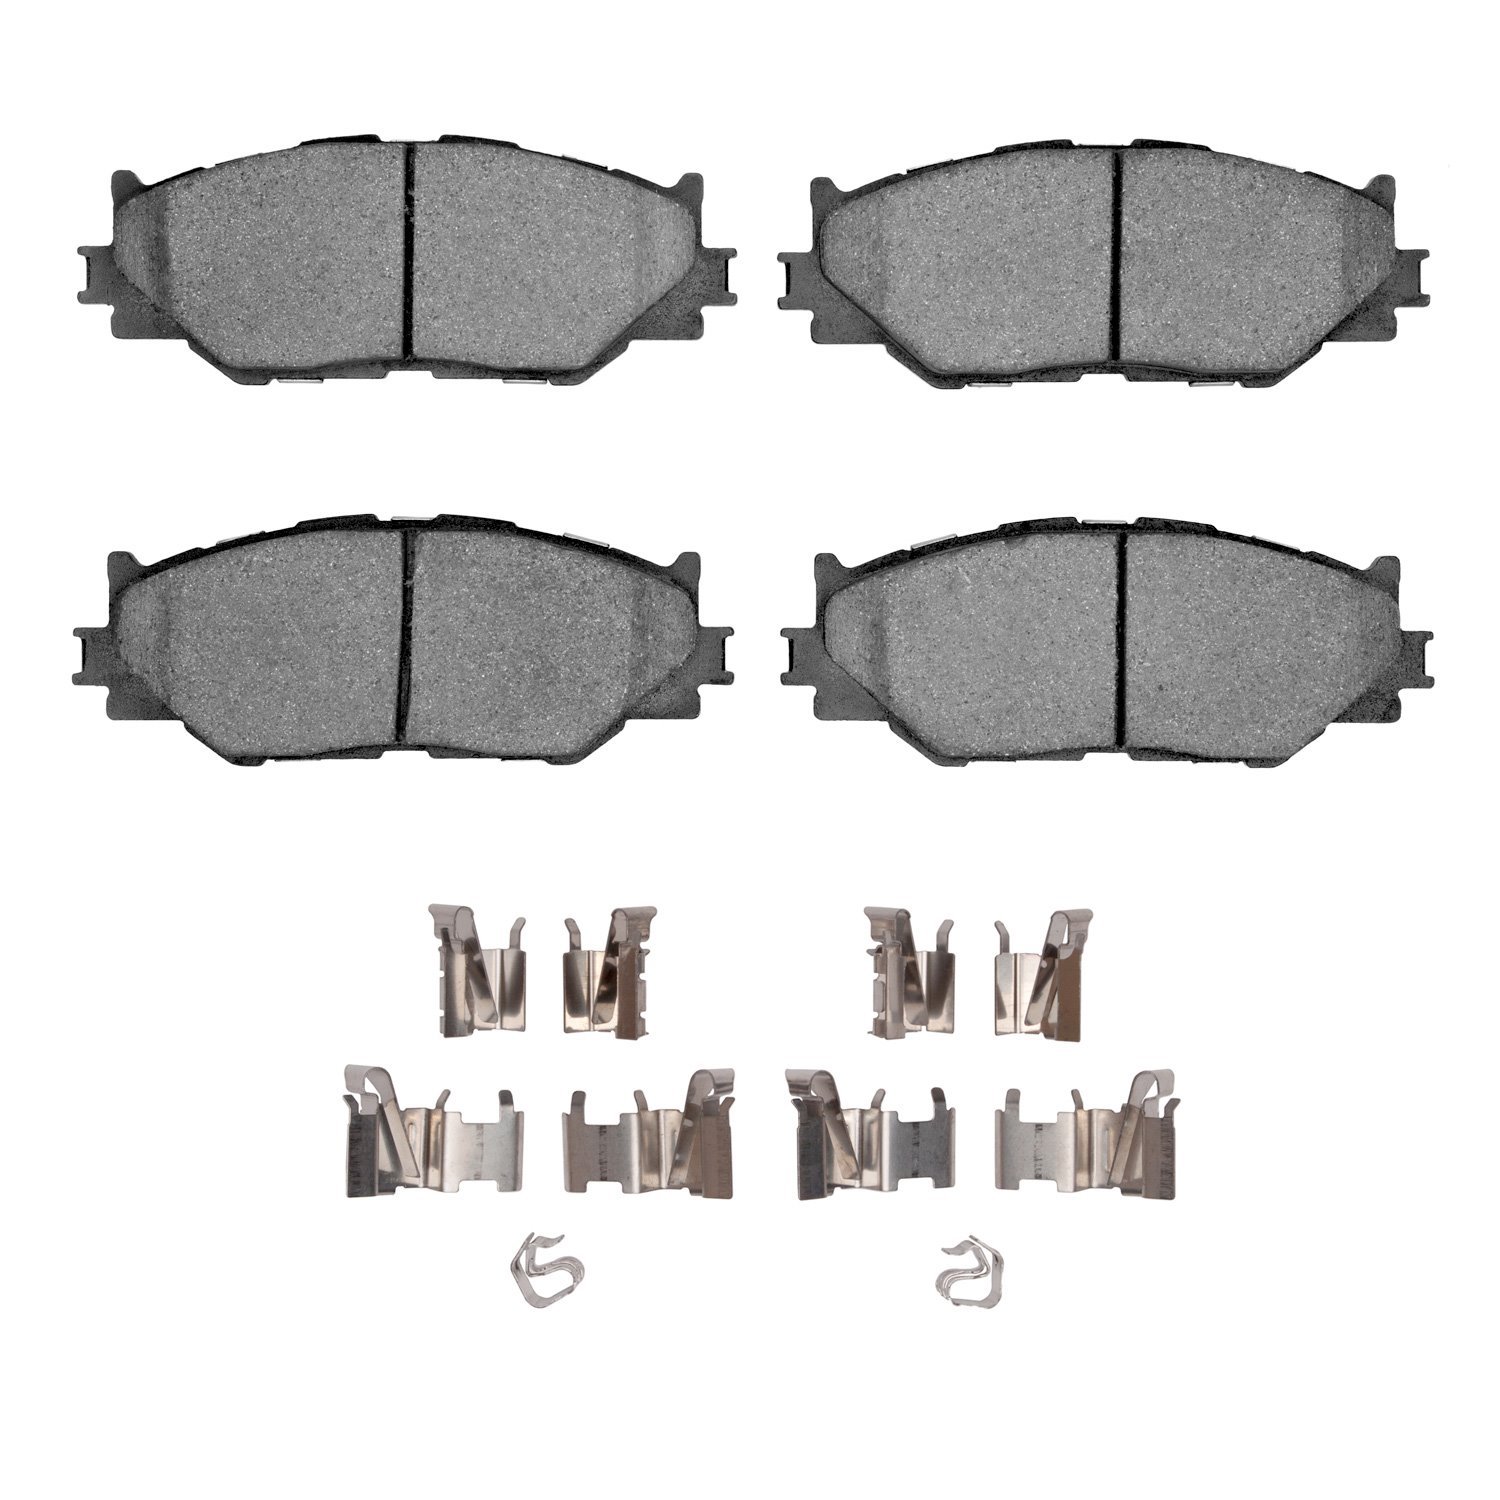 1310-1178-01 3000-Series Ceramic Brake Pads & Hardware Kit, 2006-2015 Lexus/Toyota/Scion, Position: Front